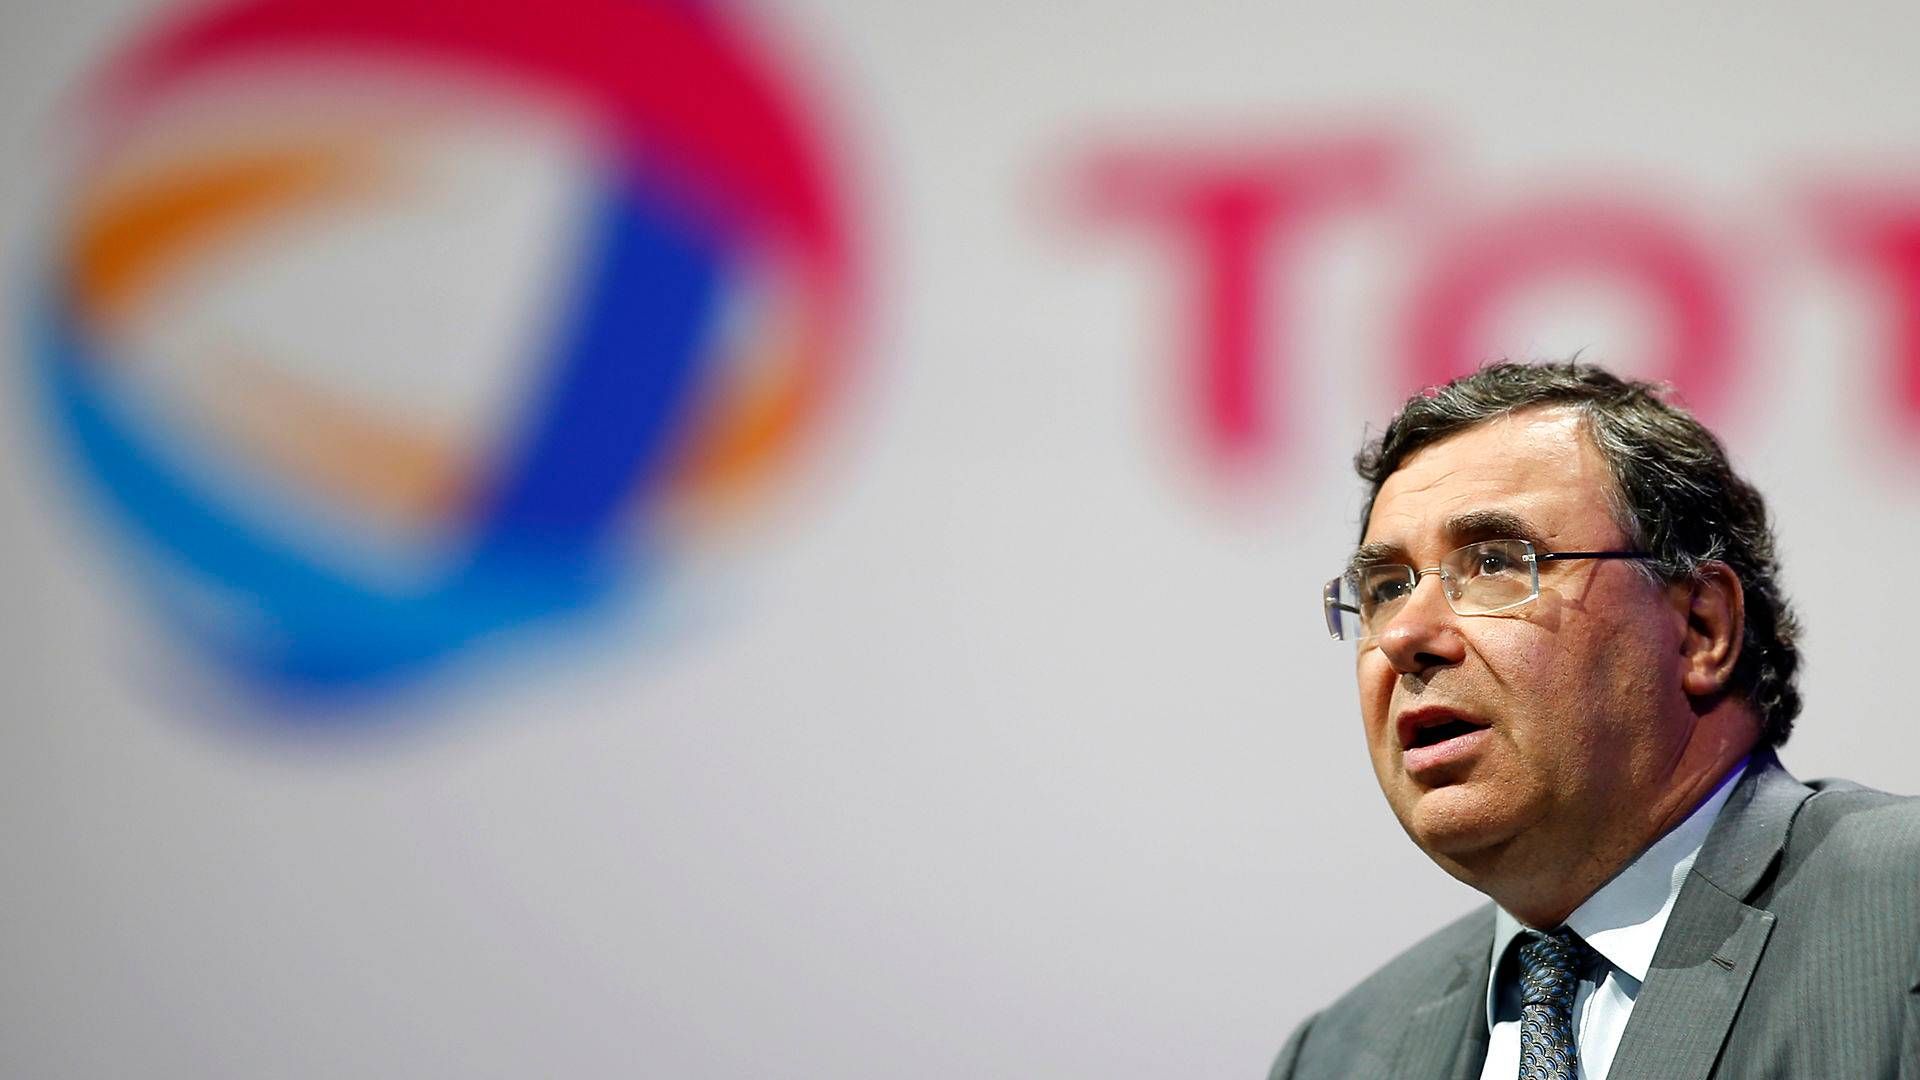 Totals adm. direktør, Patrick Pouyanné, hæfter sig ved, at Total har håndteret kritiske situationer tidligere. Nu skal de til det igen. | Foto: Benoit Tessier/Reuters/Ritzau Scanpix